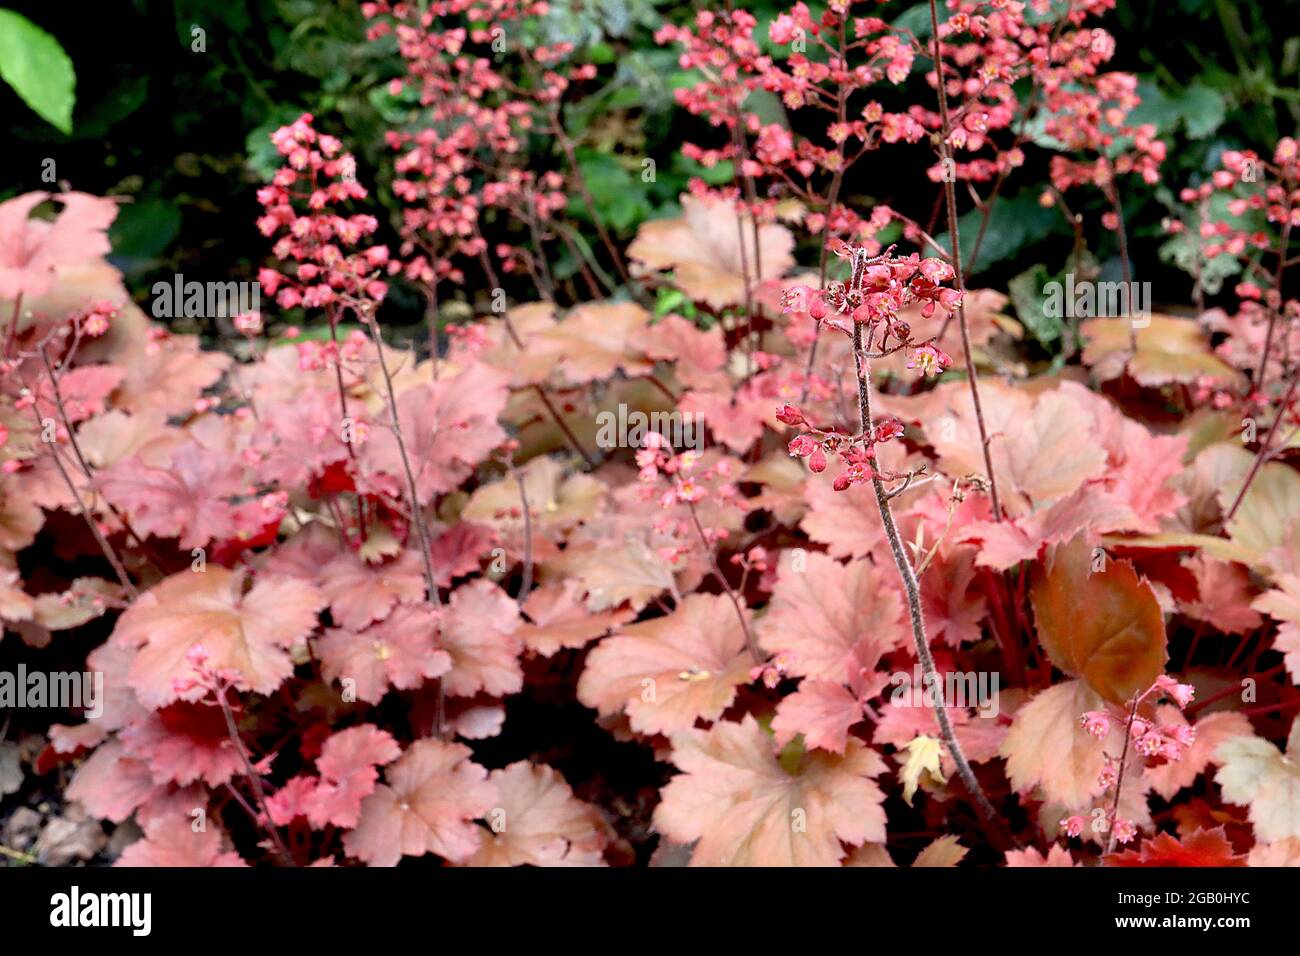 Heuchera 'Apricot' Raíz de alum / campanas de coral Apricot - pequeñas flores tubulares rosadas profundas y hojas redondas de albaricoque y russet, junio, Inglaterra, Reino Unido Foto de stock